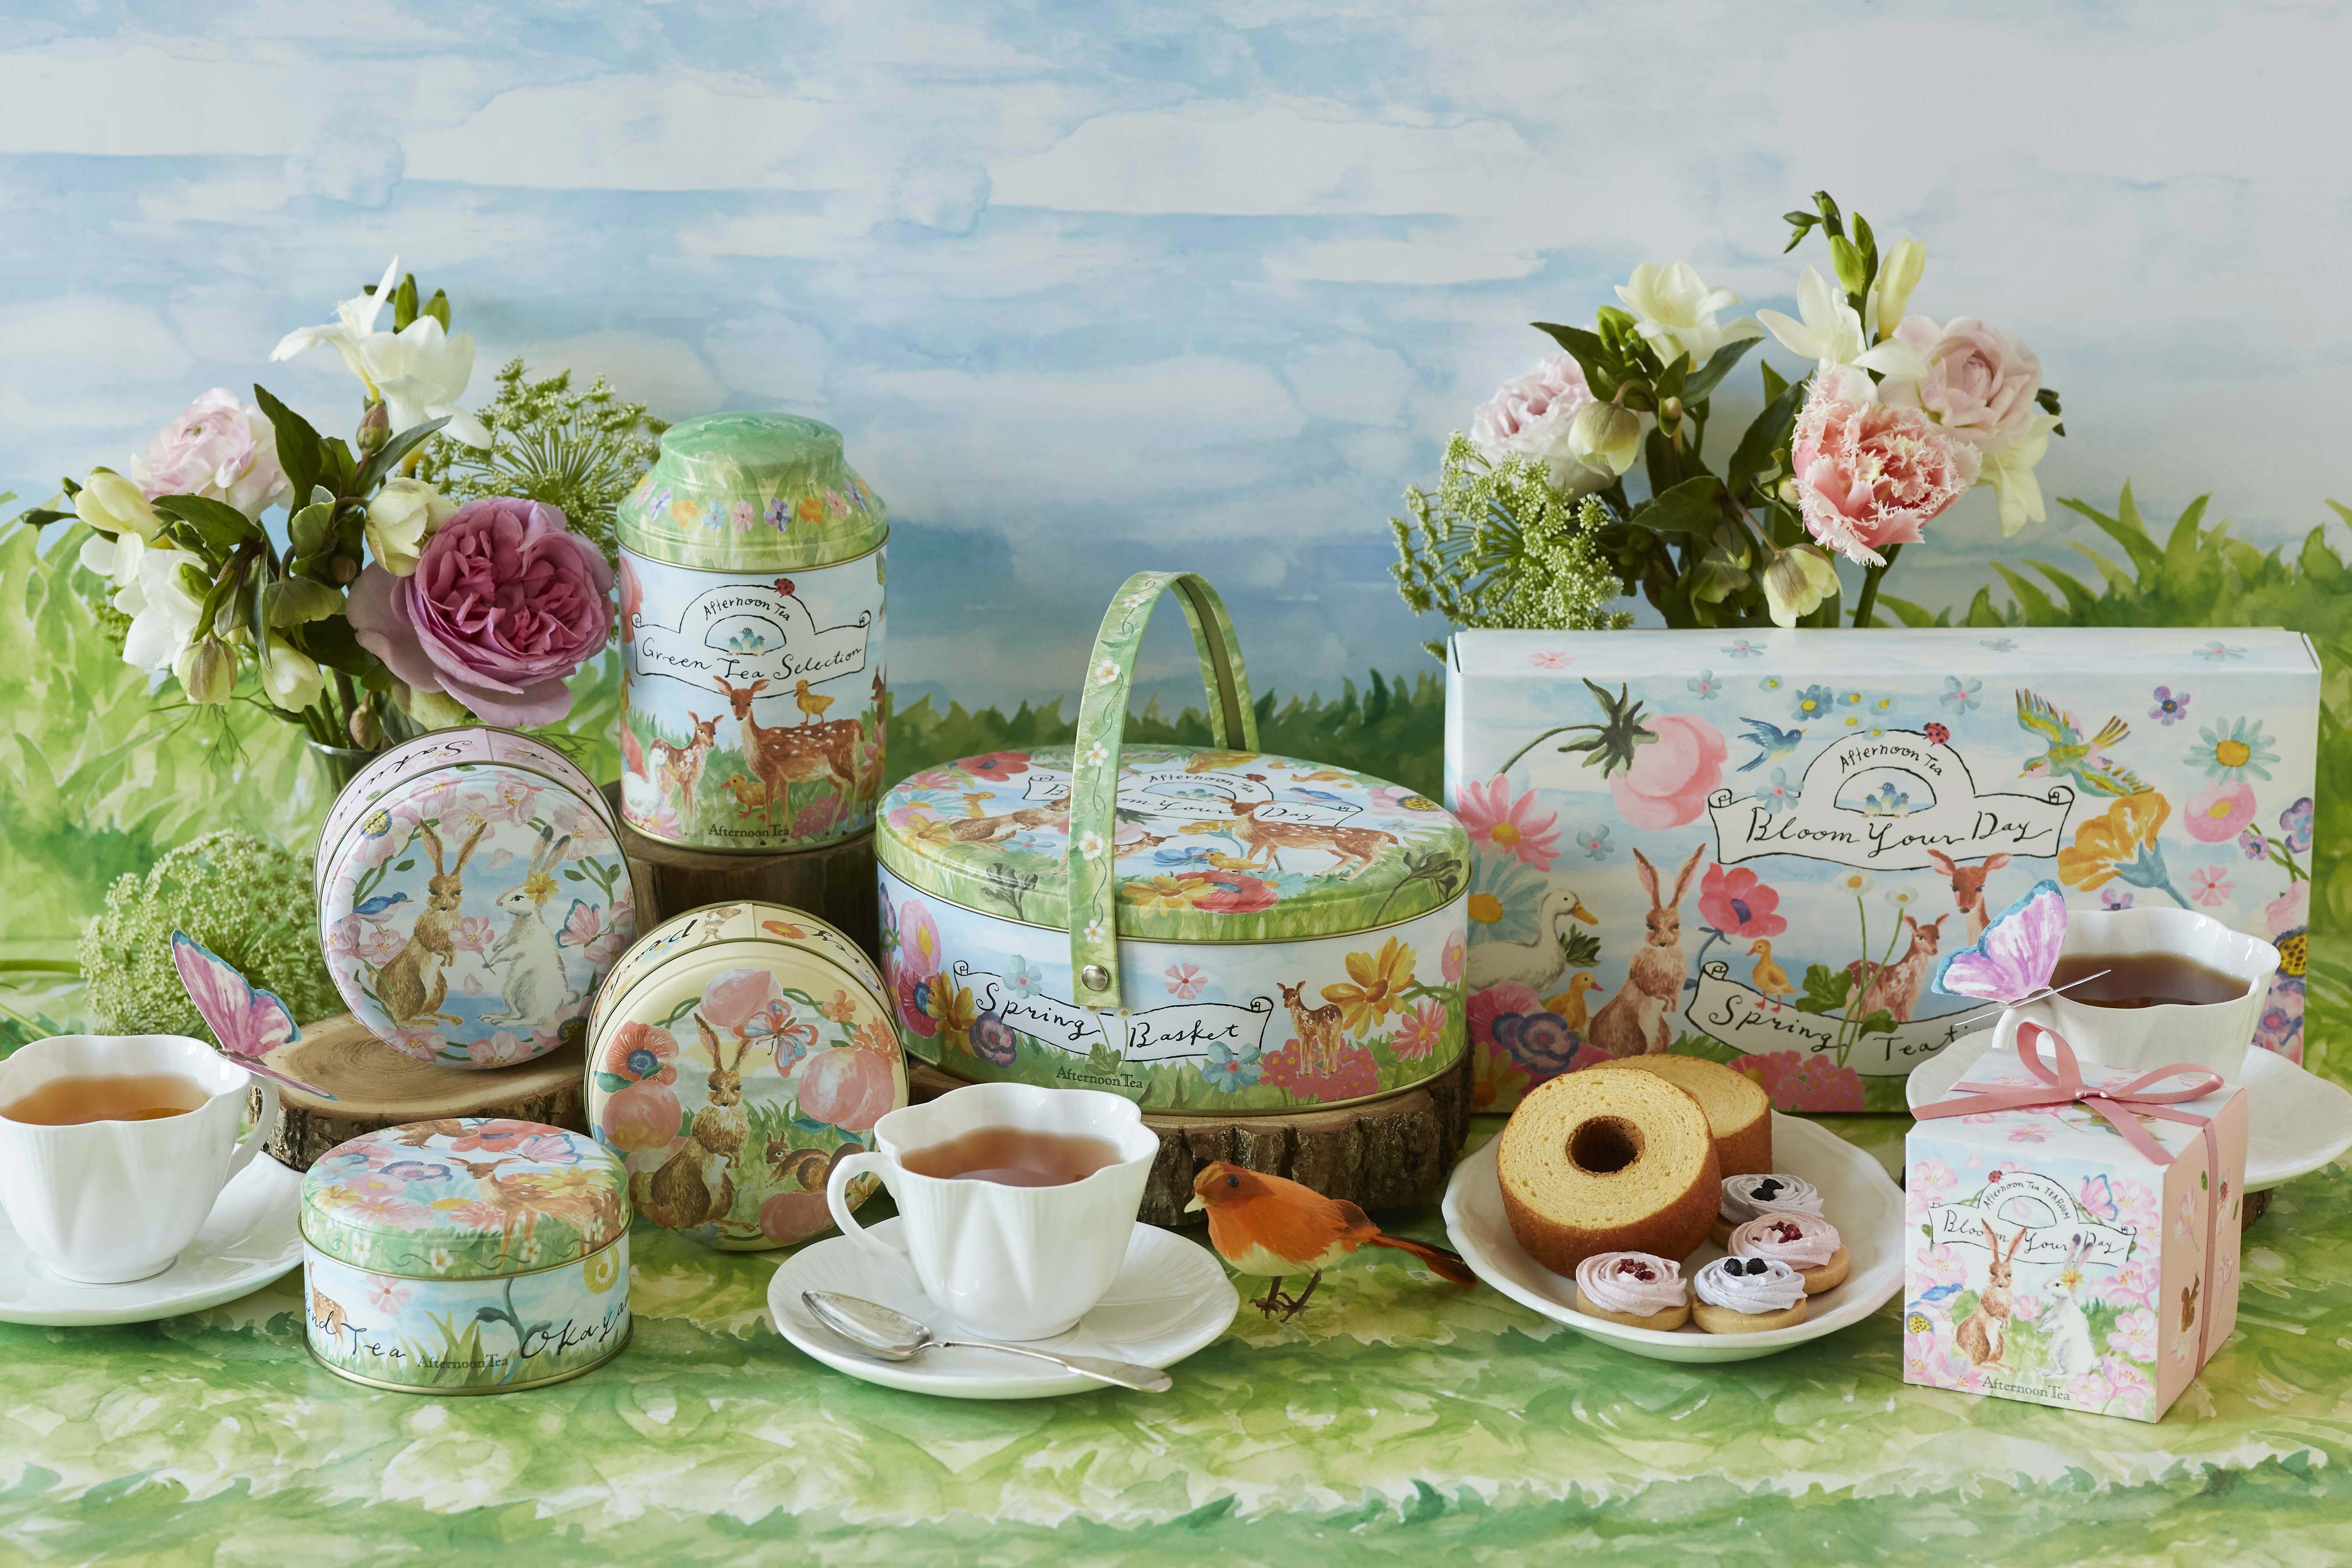 Afternoon Tea】桜の花びらをちりばめたフレーバーティーや桜と抹茶の